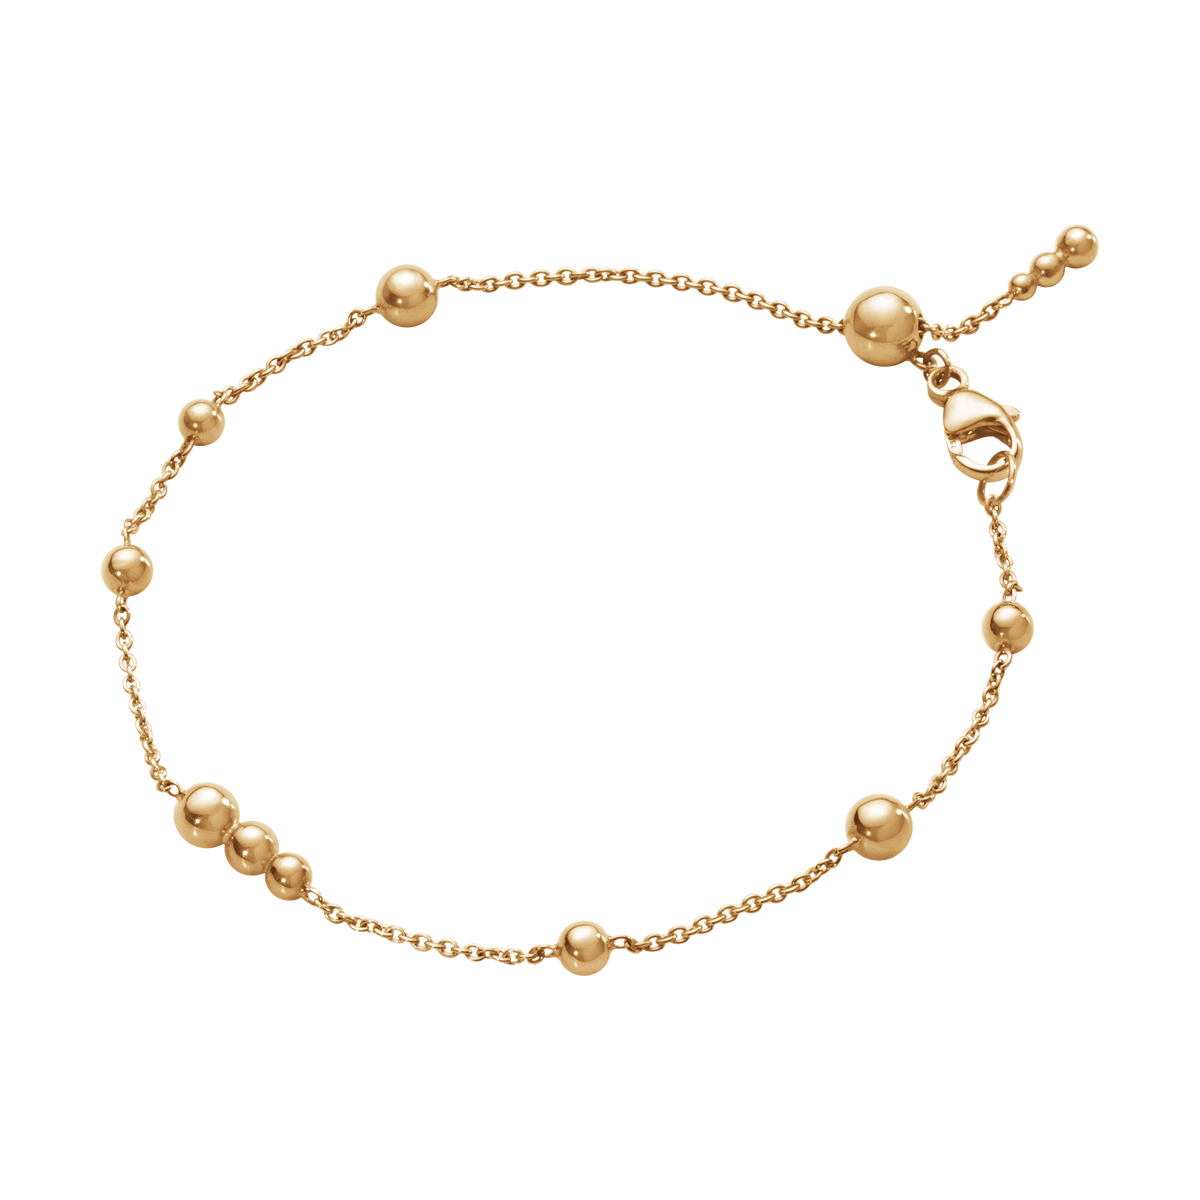 Moonlight Grapes rose gold fine bracelet | Georg Jensen